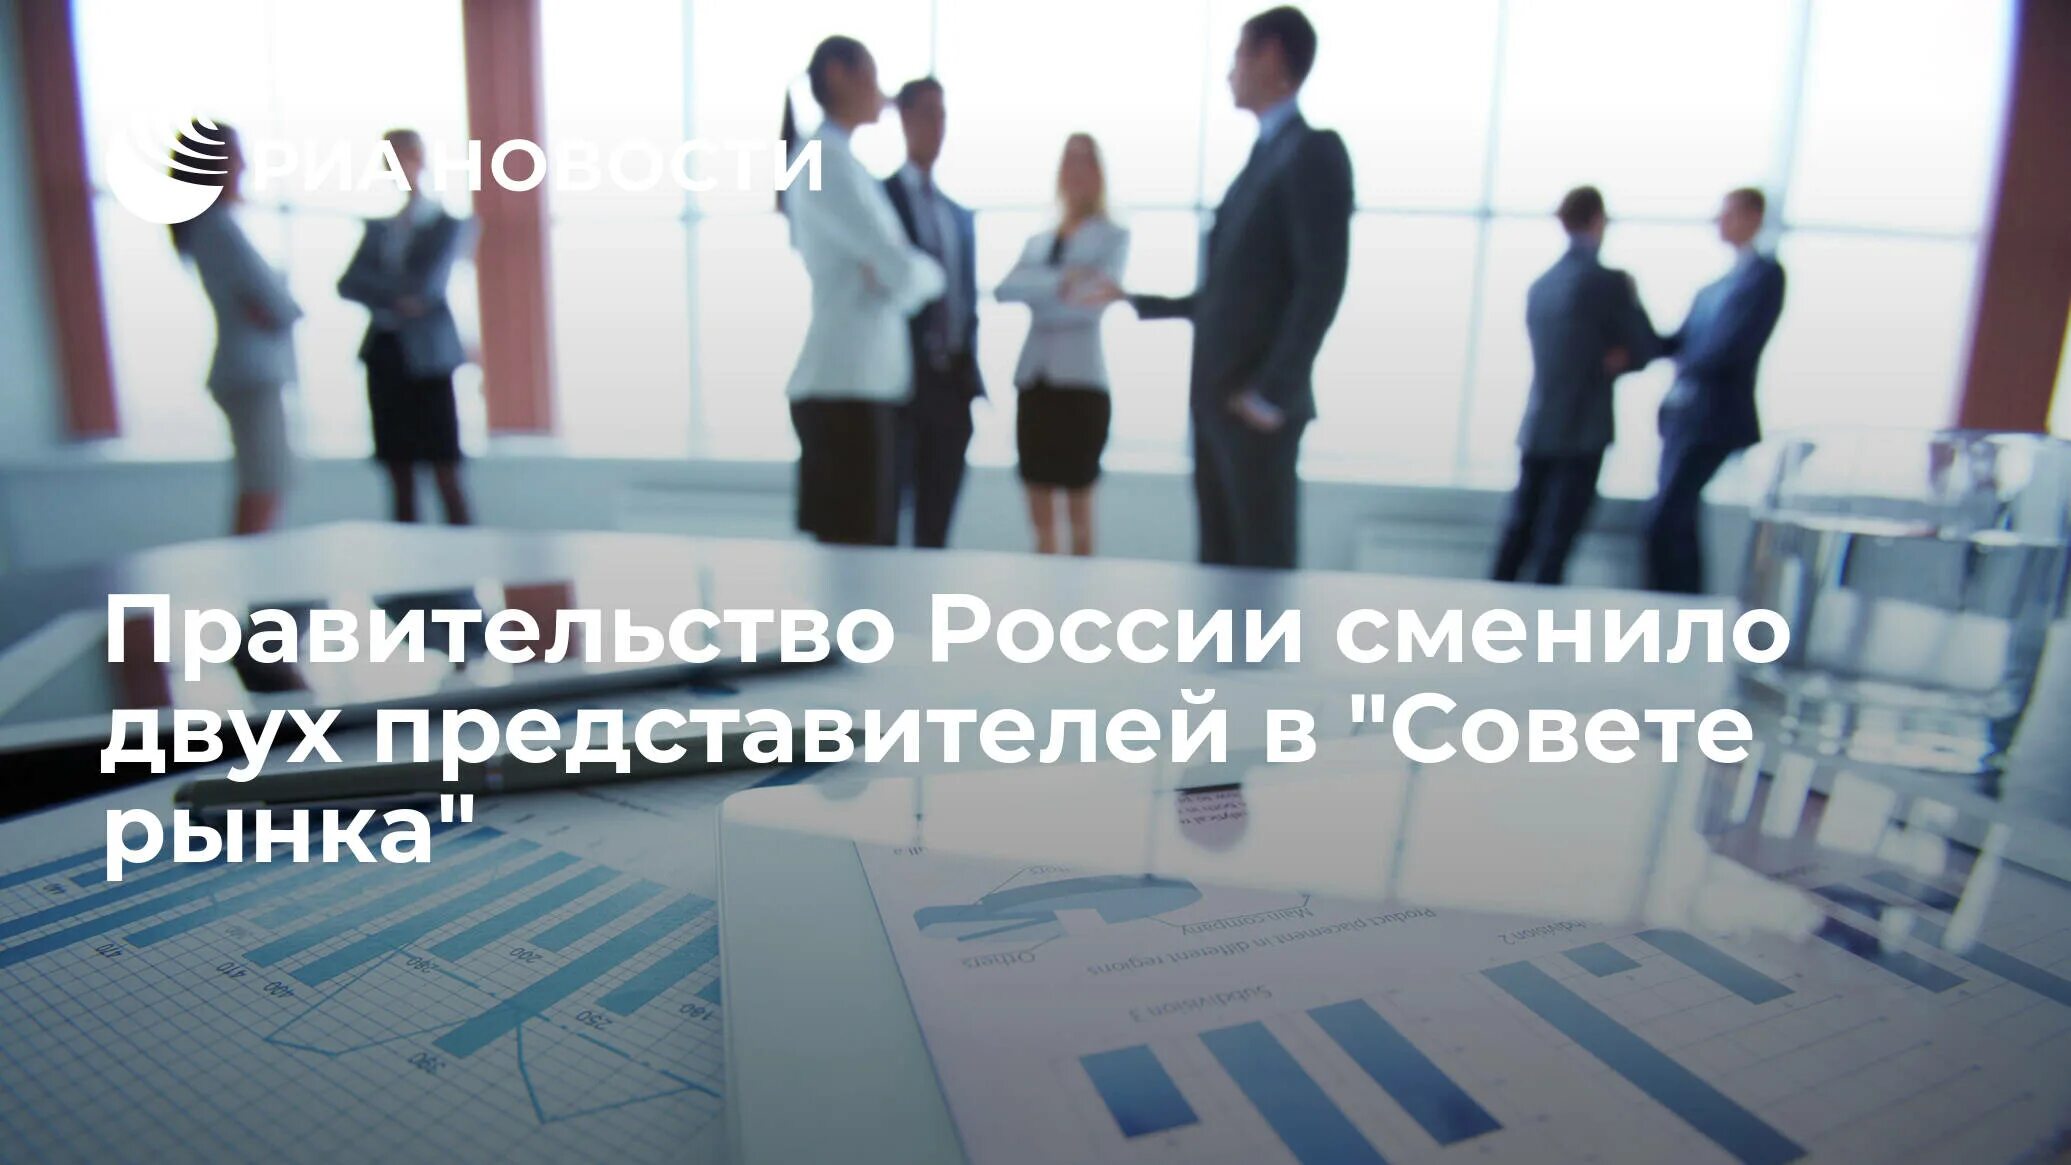 Он получил повышение. День социального предпринимательства 2021. Норникель лучший работодатель по версии Forbes. 50 Лучших работодателей России — 2020.